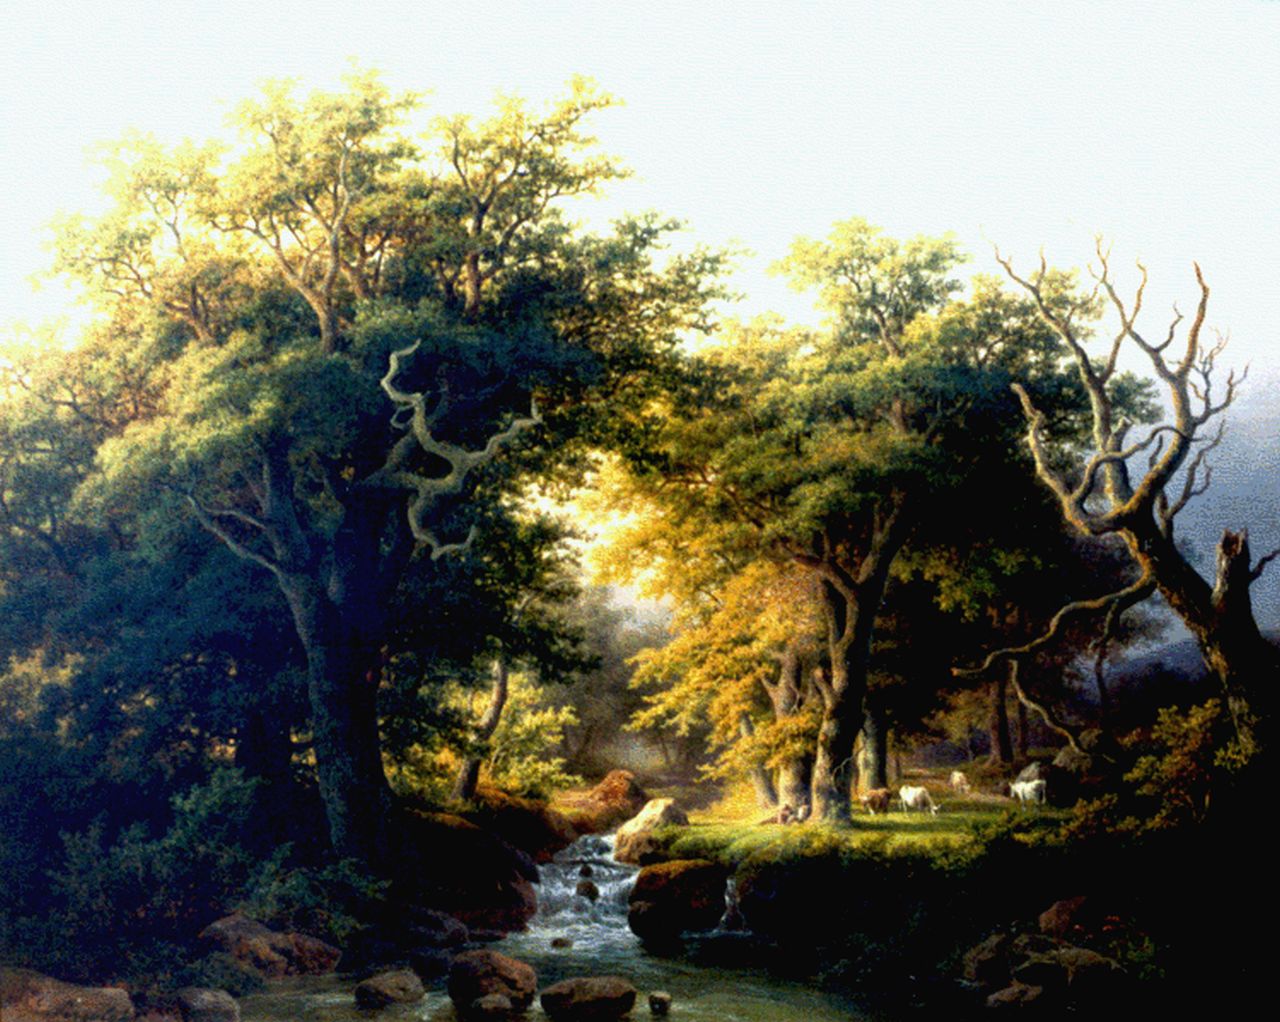 Pizzolatto E.  | Eugenio Pizzolatto, A stream in a forest landscape, Öl auf Leinwand 55,1 x 68,5 cm, signed l.l.